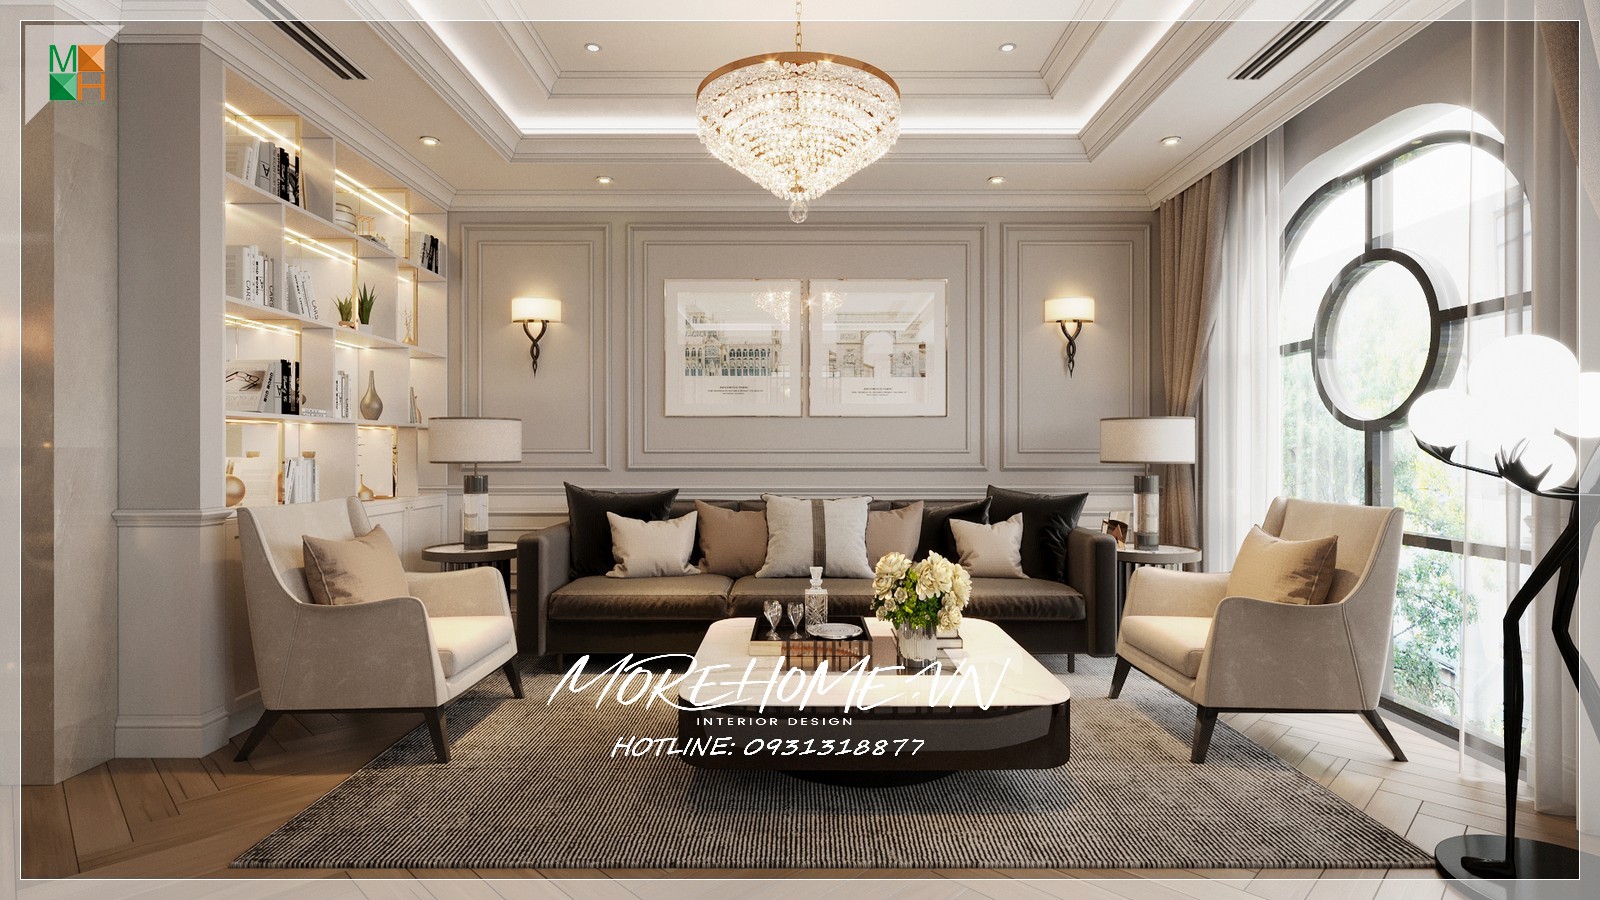 Bàn trang trí phòng khách được thiết kế theo phong cách hiện đại tinh tế, chiếc bàn nhận được sự quan tâm và tin dùng của số đông các chủ hộ. Chiếc bàn trang trí được sử dụng để đặt đèn để bàn hoặc